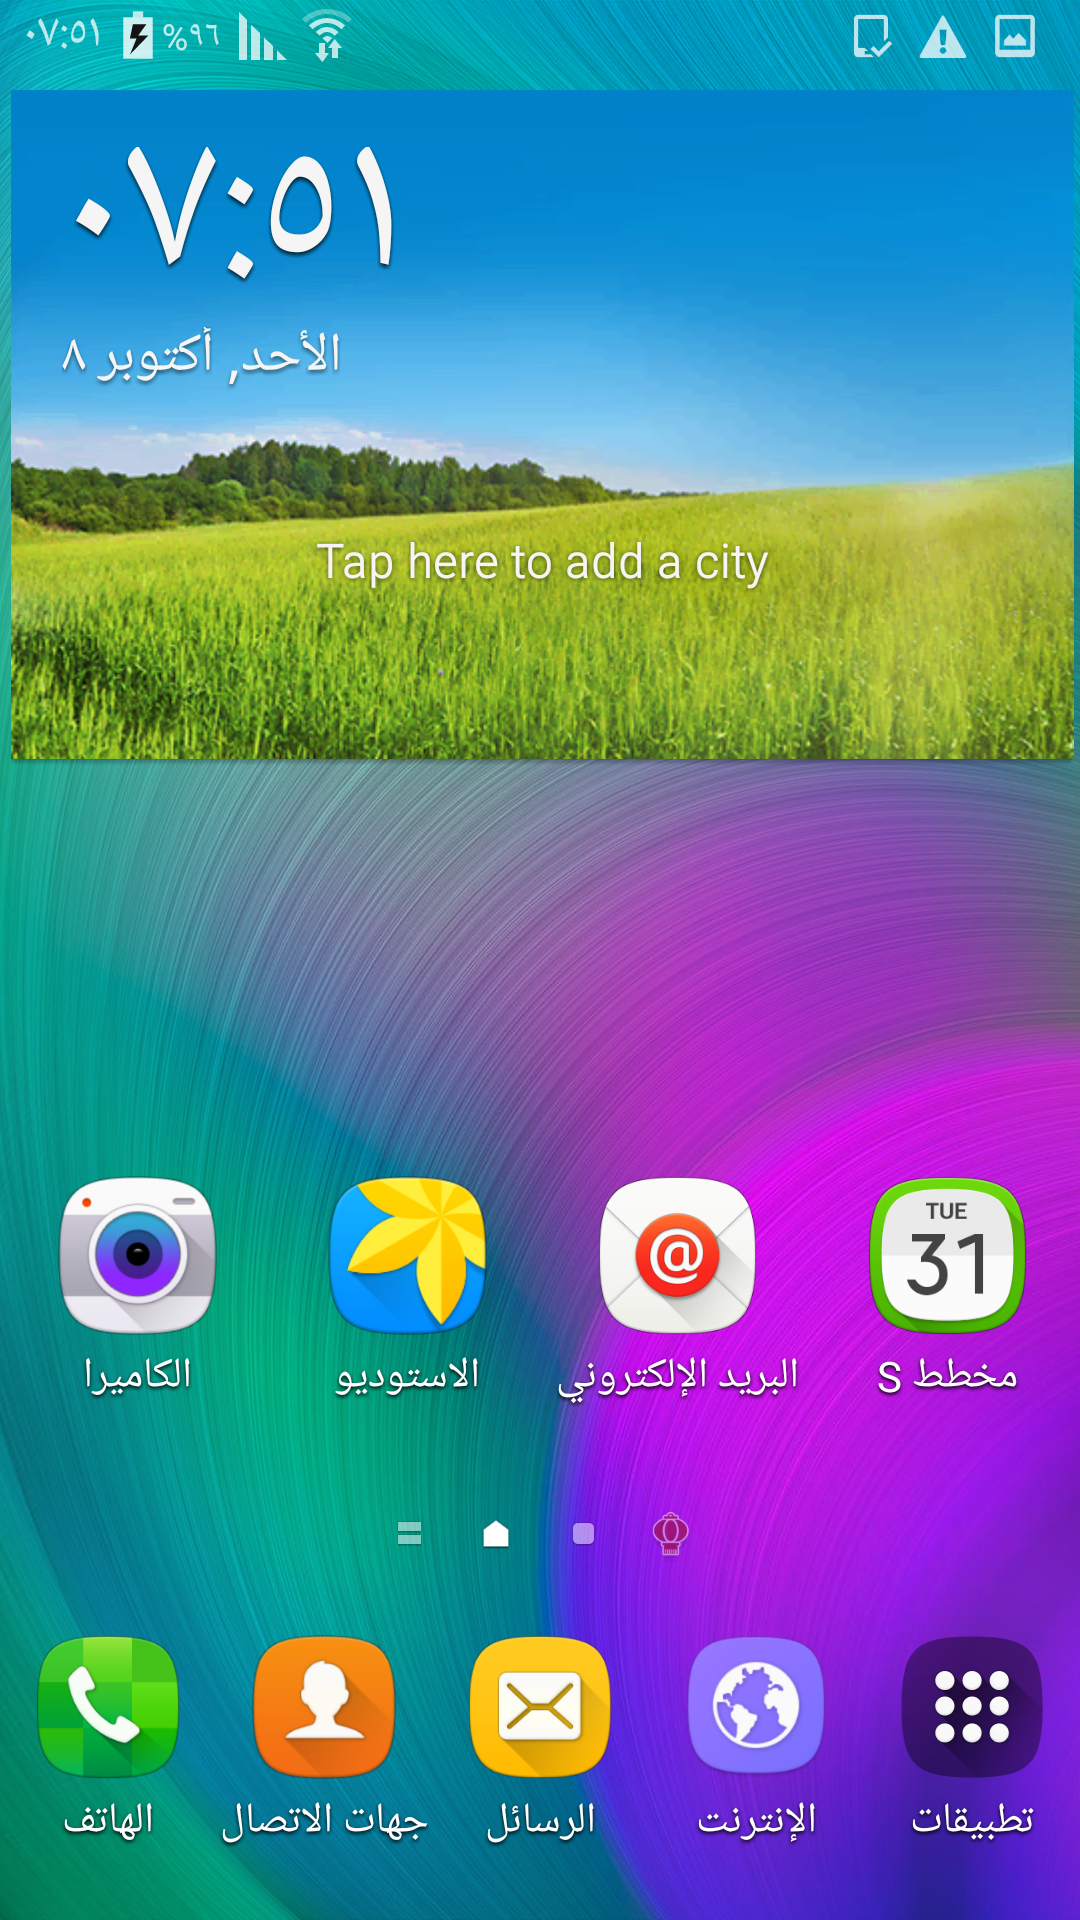 عربي تركي فارسي A7000 اصدار 6.0.1 مع تطبيقات غوغل بلاي